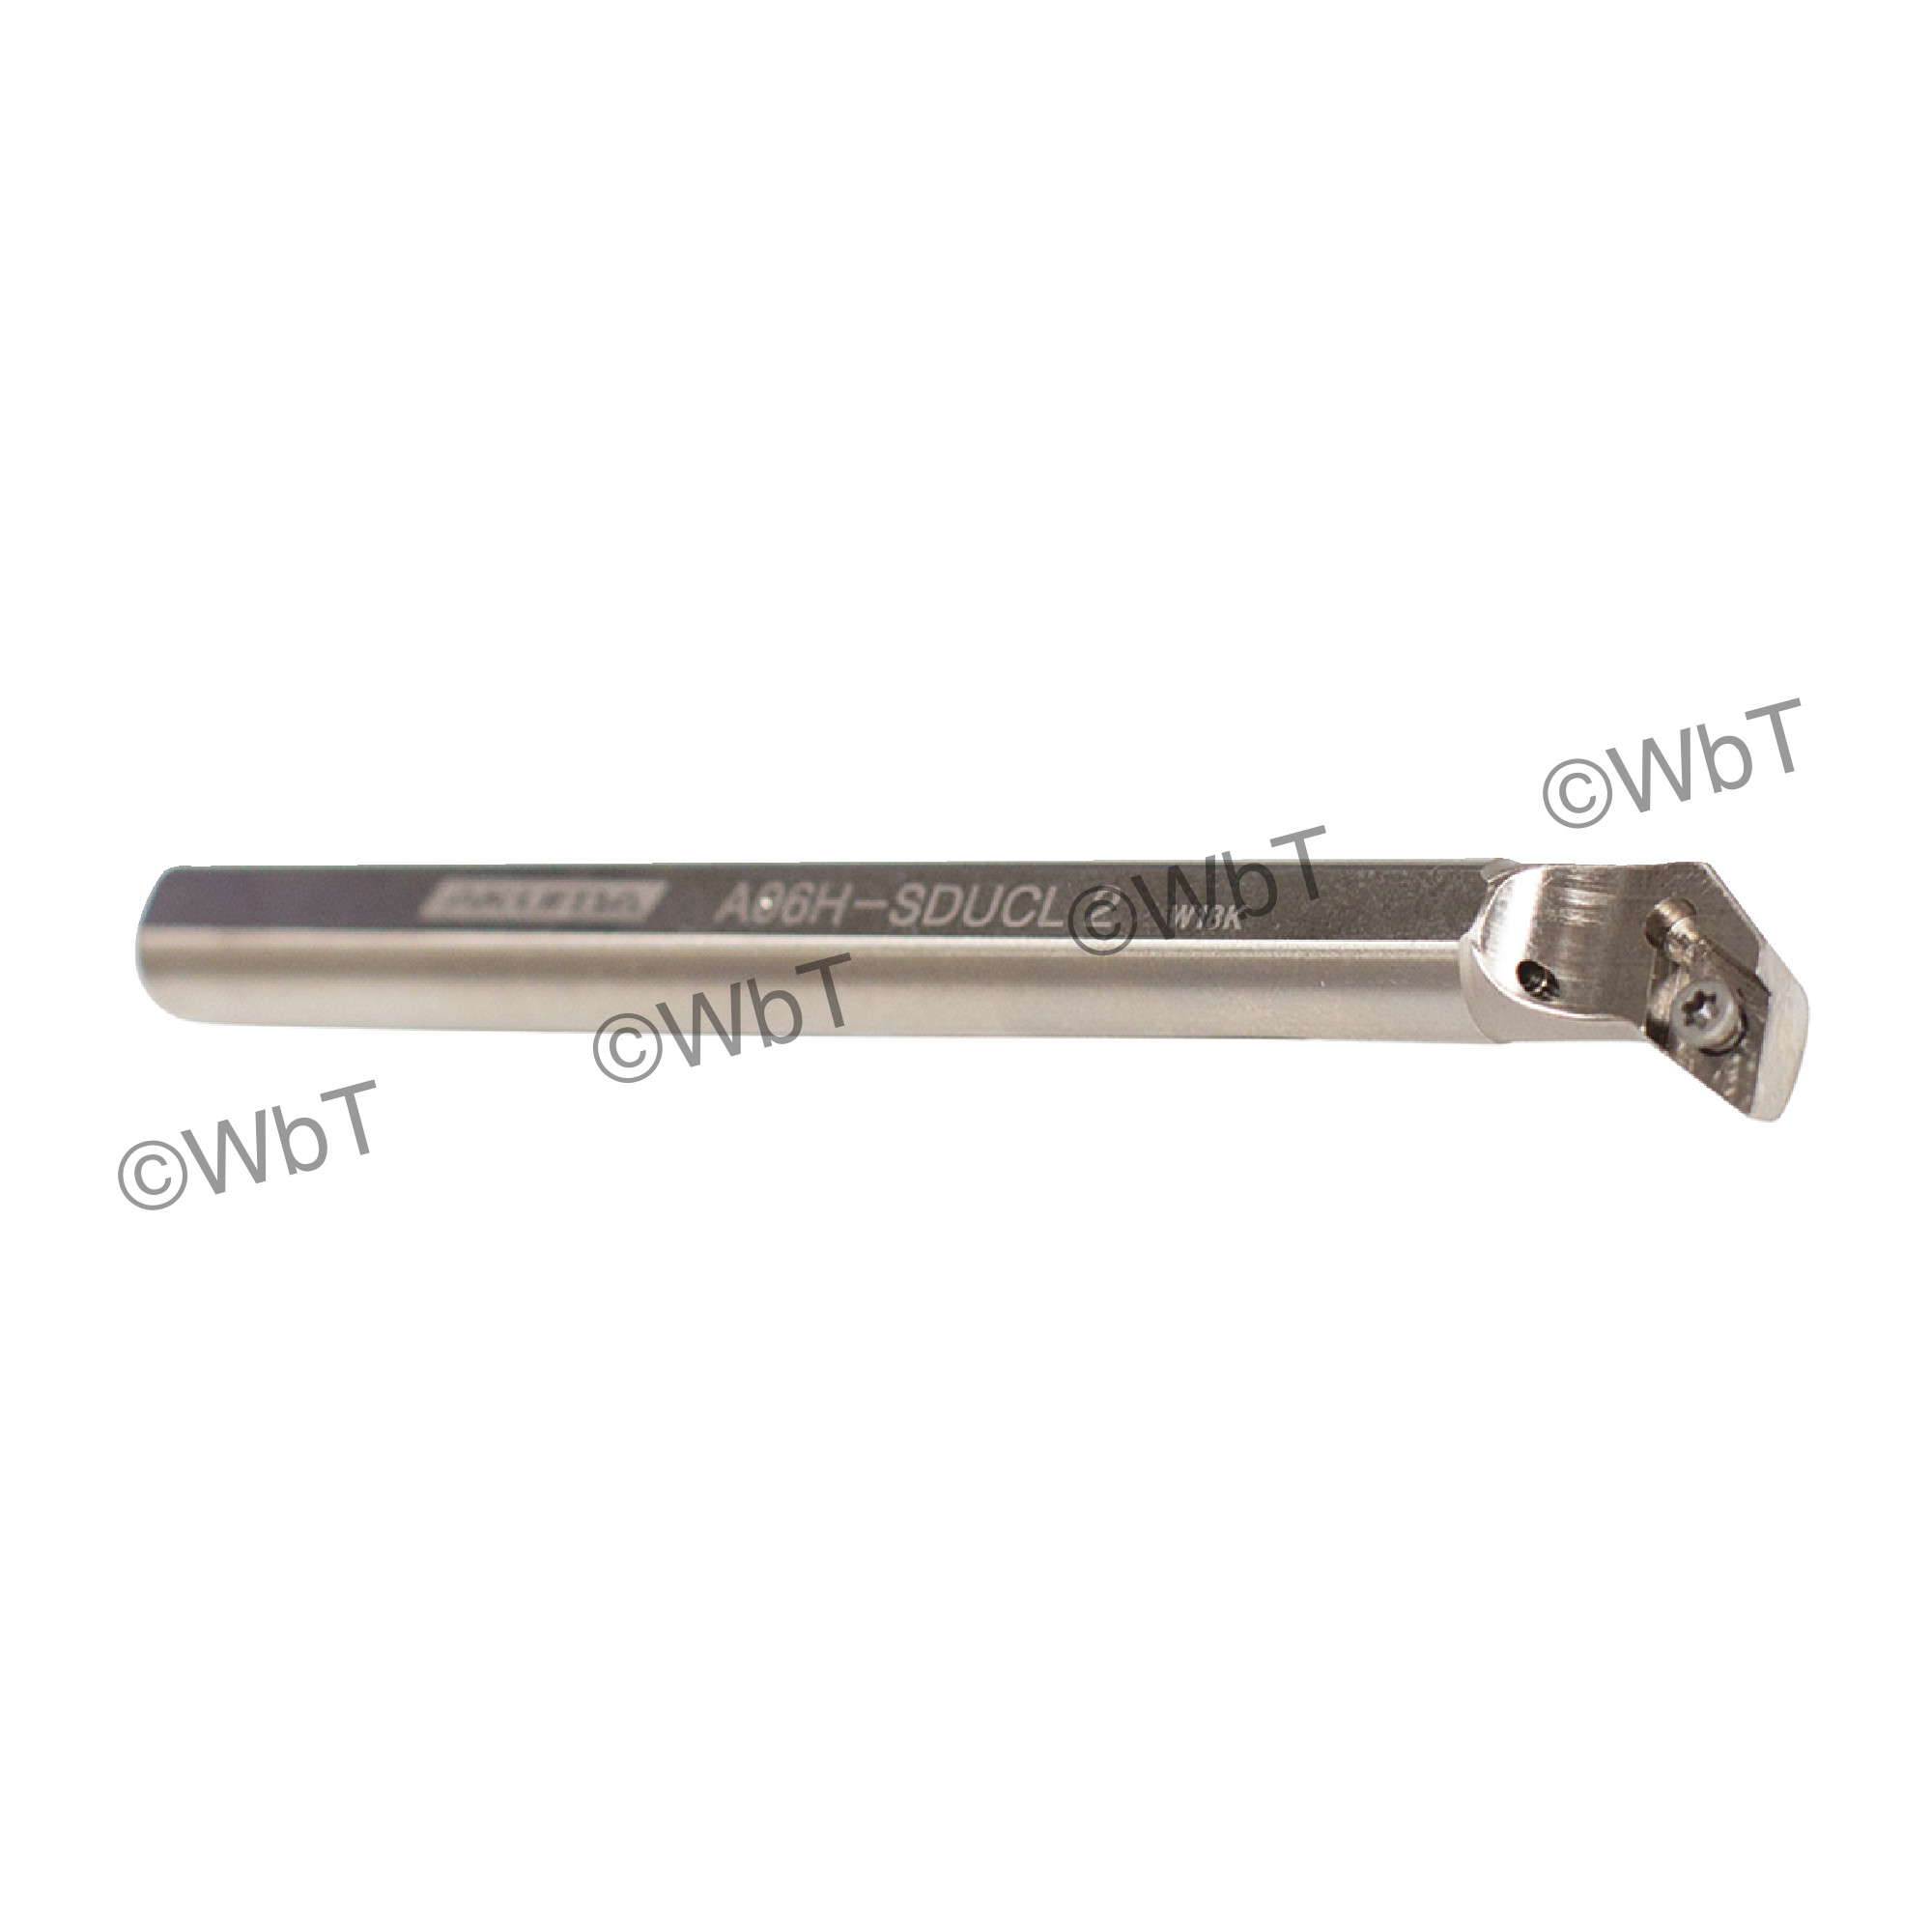 AKUMA - A06H-SDUCL-2 / Steel Boring Bar / 3/8" Shank / DCMT2(1.5)_ / Cooalnt Thru / Left Hand